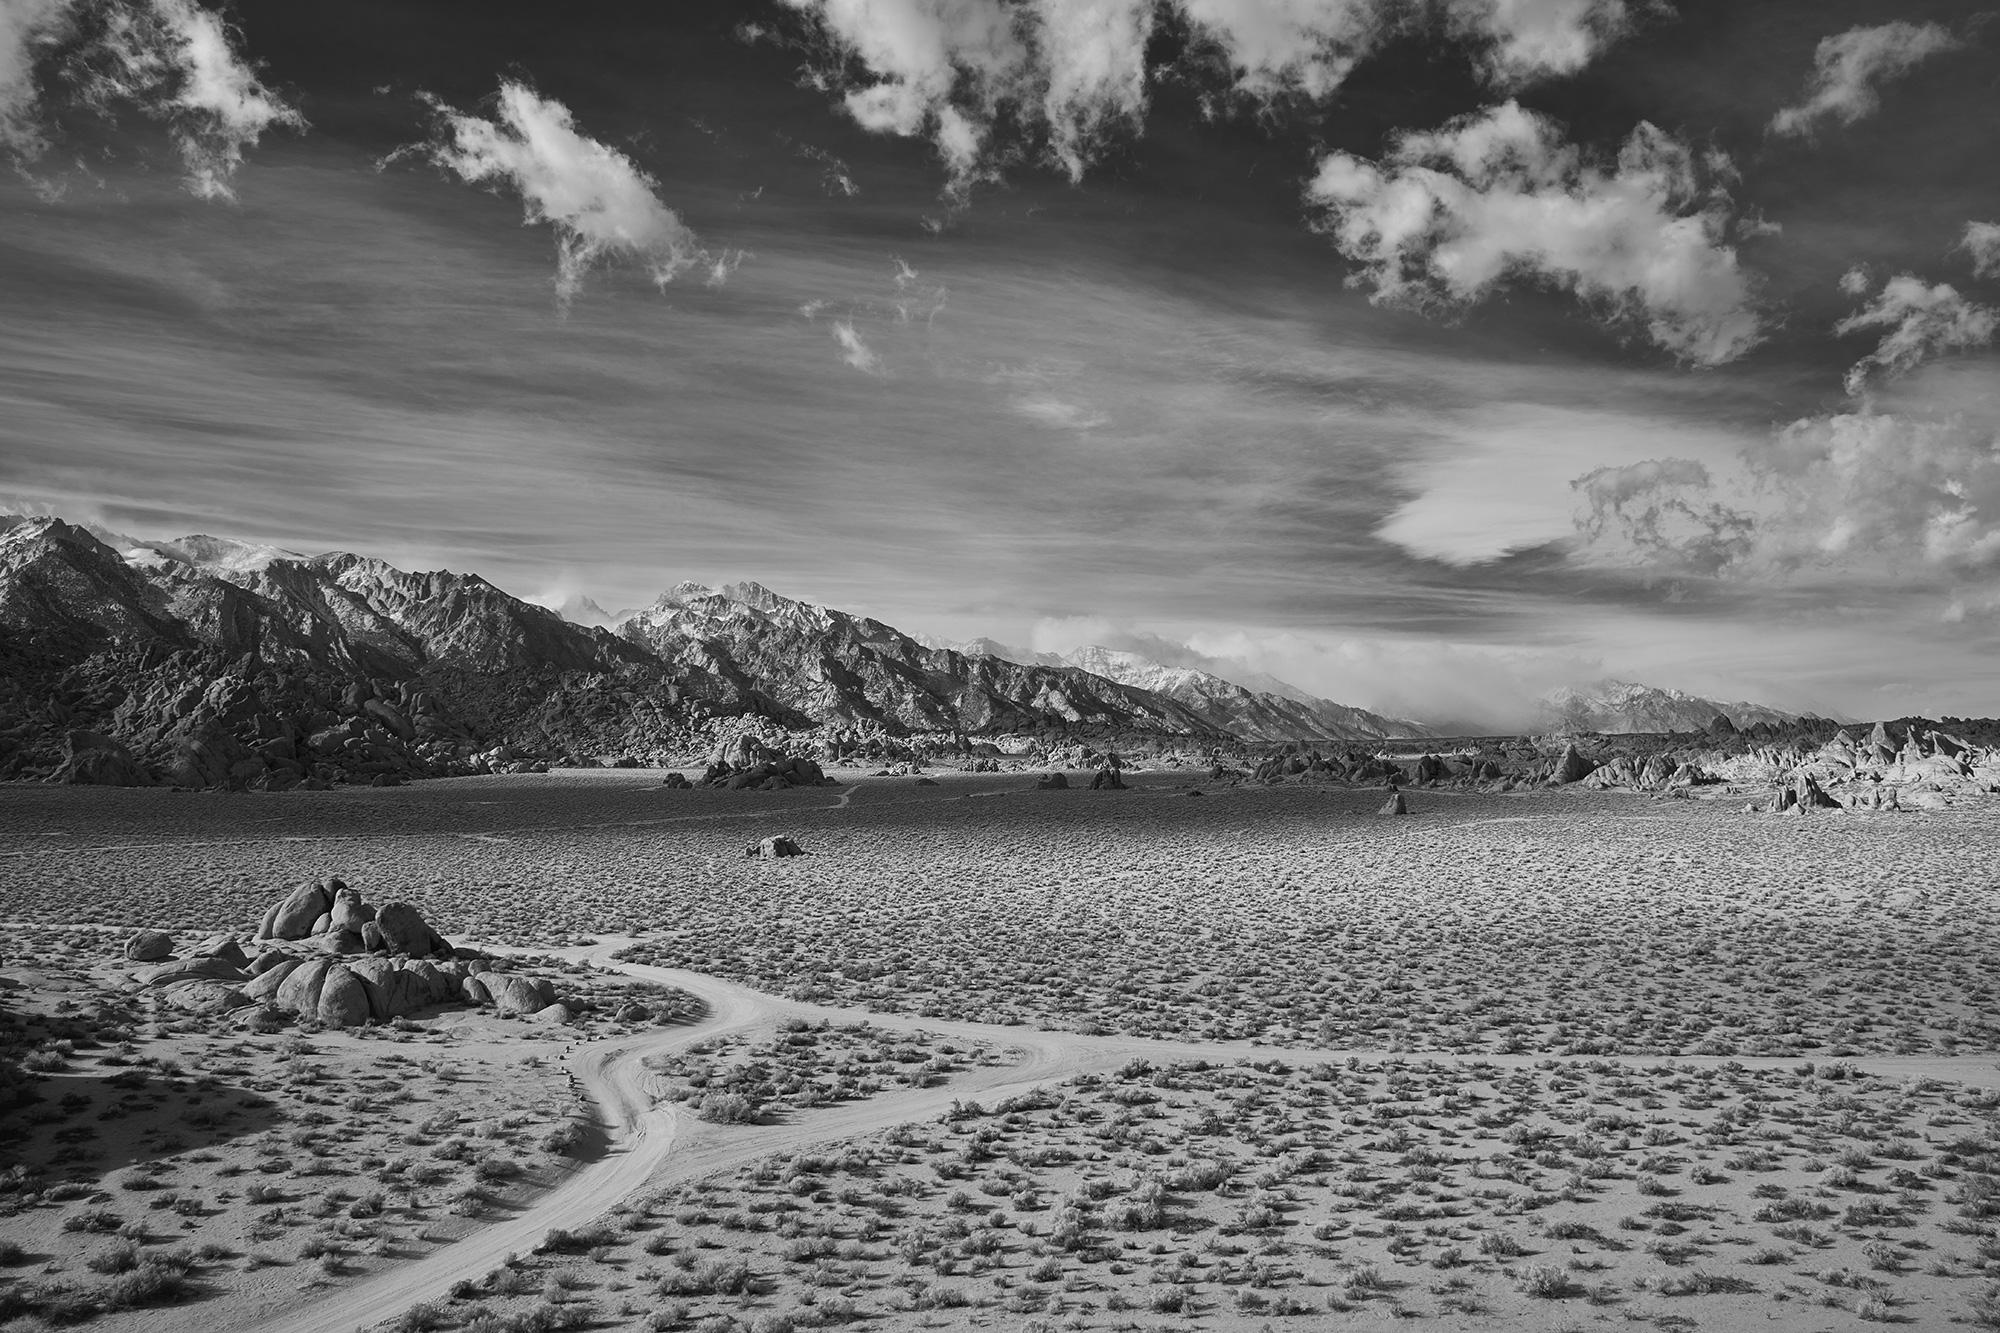 Frank Schott Black and White Photograph – Desert Crossing – großformatiges Schwarz-Weiß-Foto einer dramatischen Wüstenlandschaft